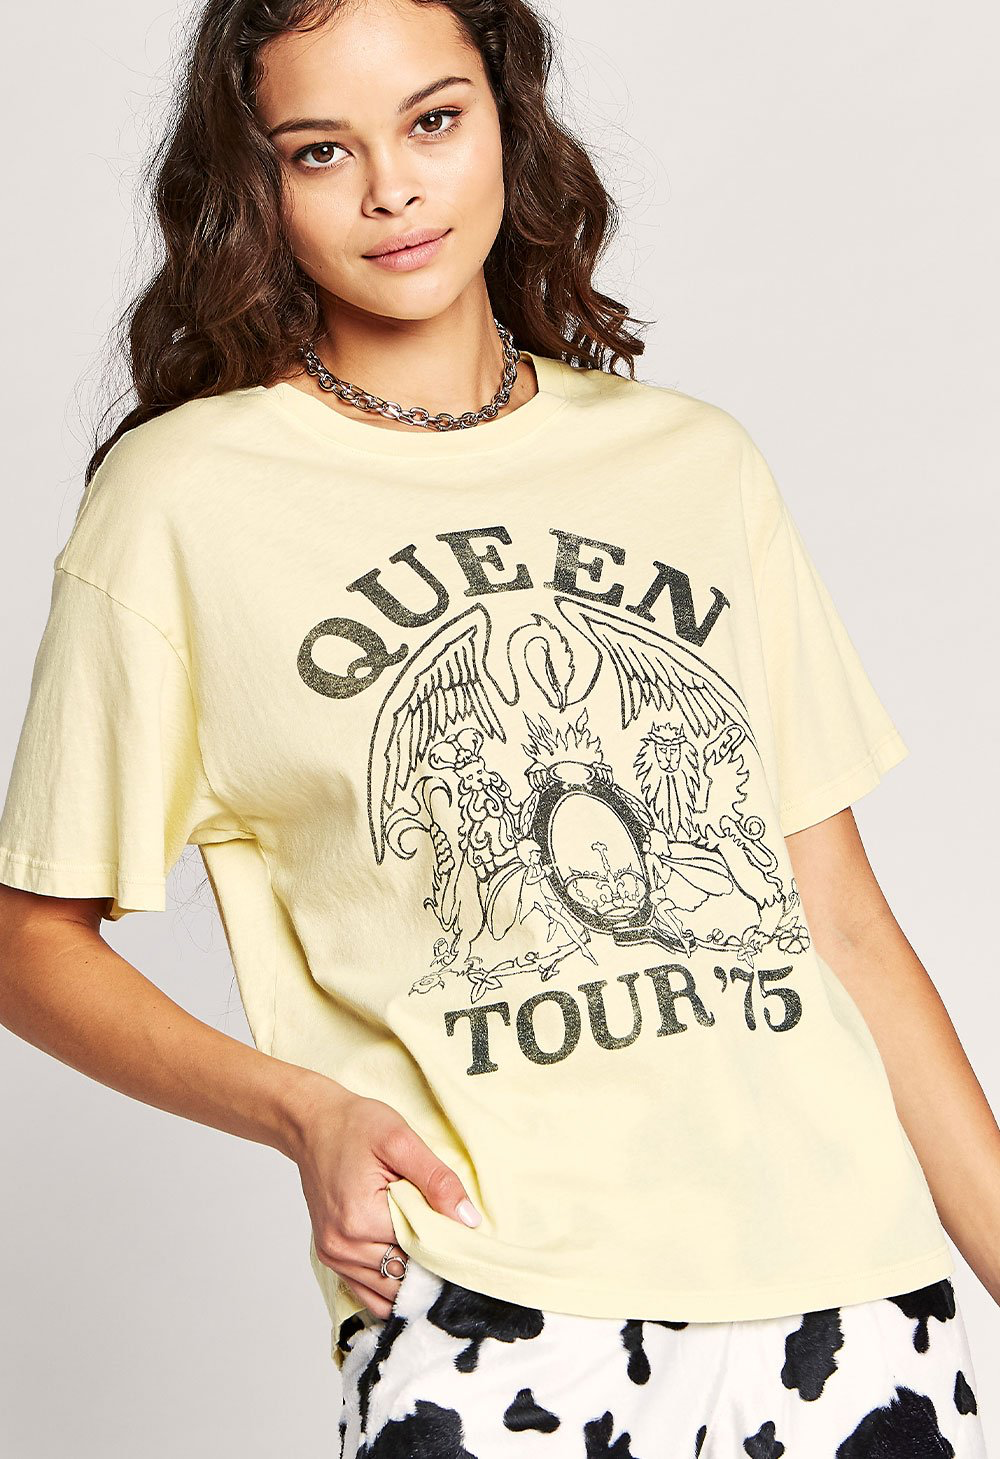 Queen Tour ’75 Tee